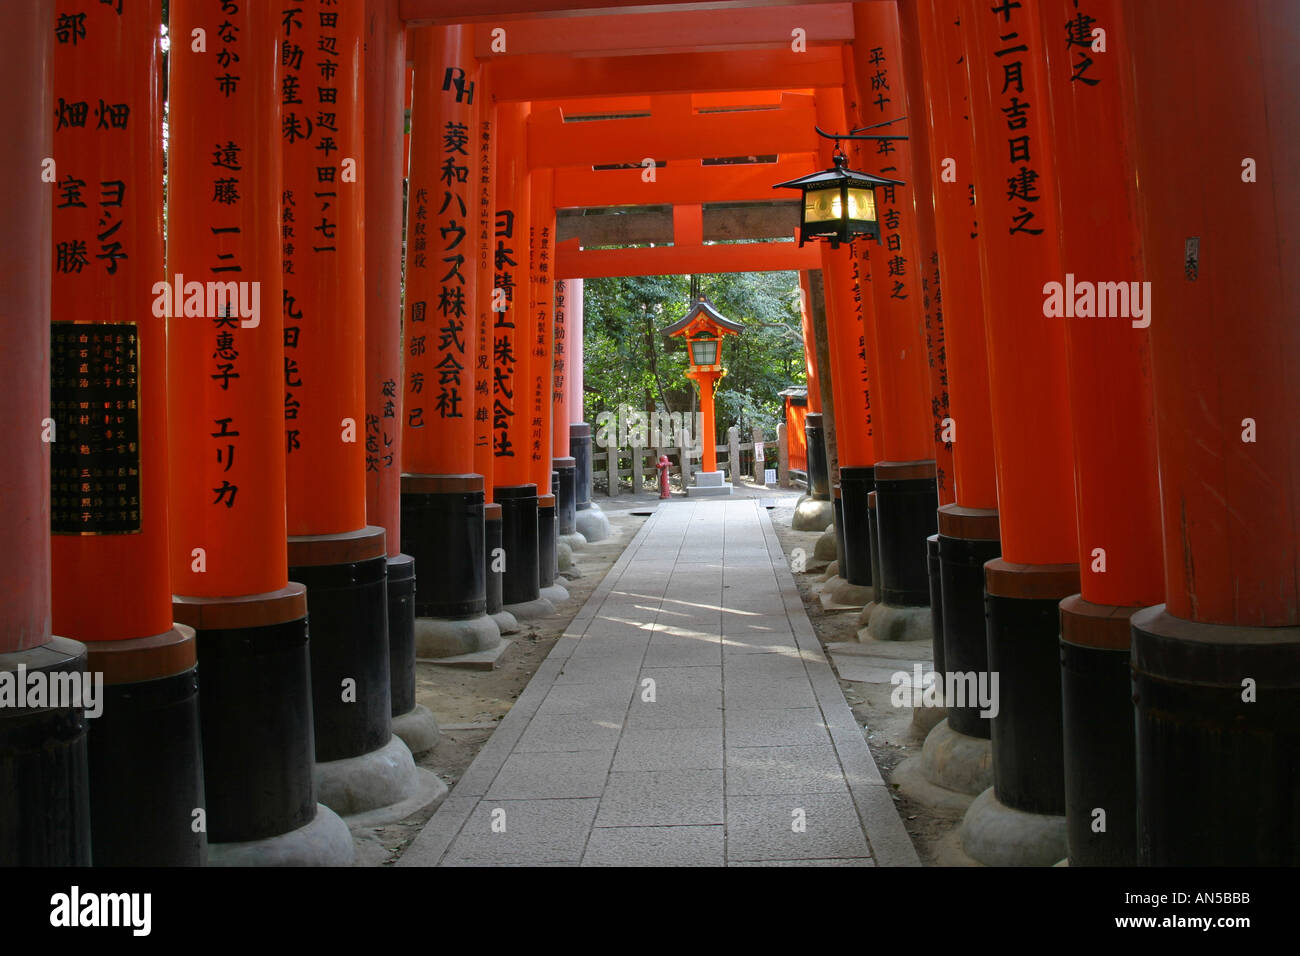 Famous Kyoto tourist attraction bright orange traditional religious Tori gates at Fushimi Inari Taisha shrine Kansai Japan Asia Stock Photo